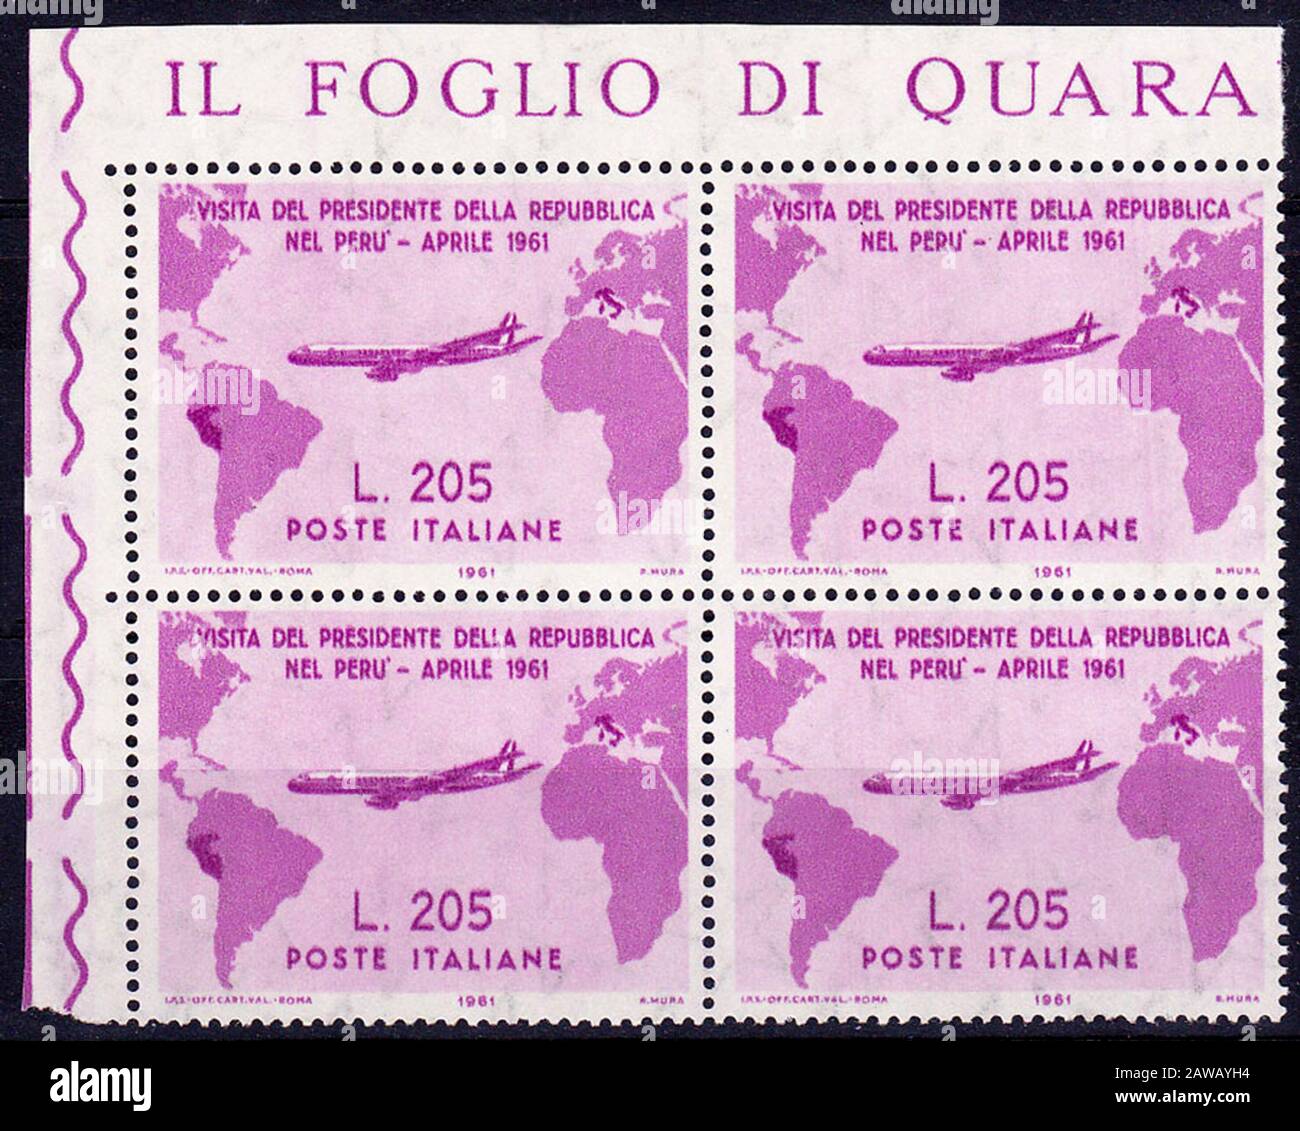 1961, 3. april, ITALIEN: Die gefeierte und seltene italienische Briefmarke Gron Rosa. Gedruckt vom italienischen POSTDRUCKDIENST zum Gedenken an den Besuch Stockfoto